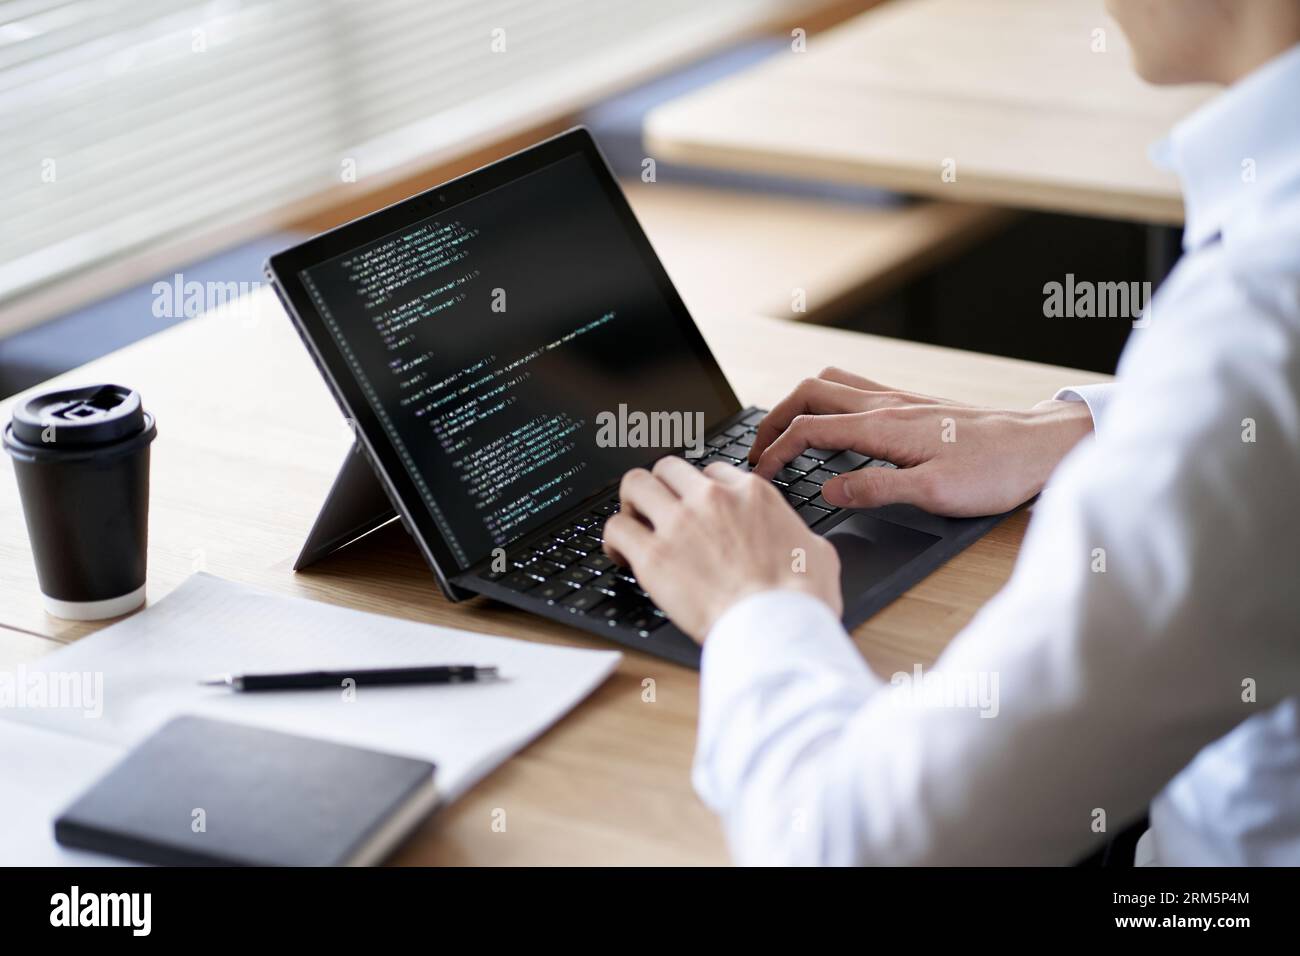 Asiatischer Programmierer, der Code auf einem Laptop schreibt Stockfoto